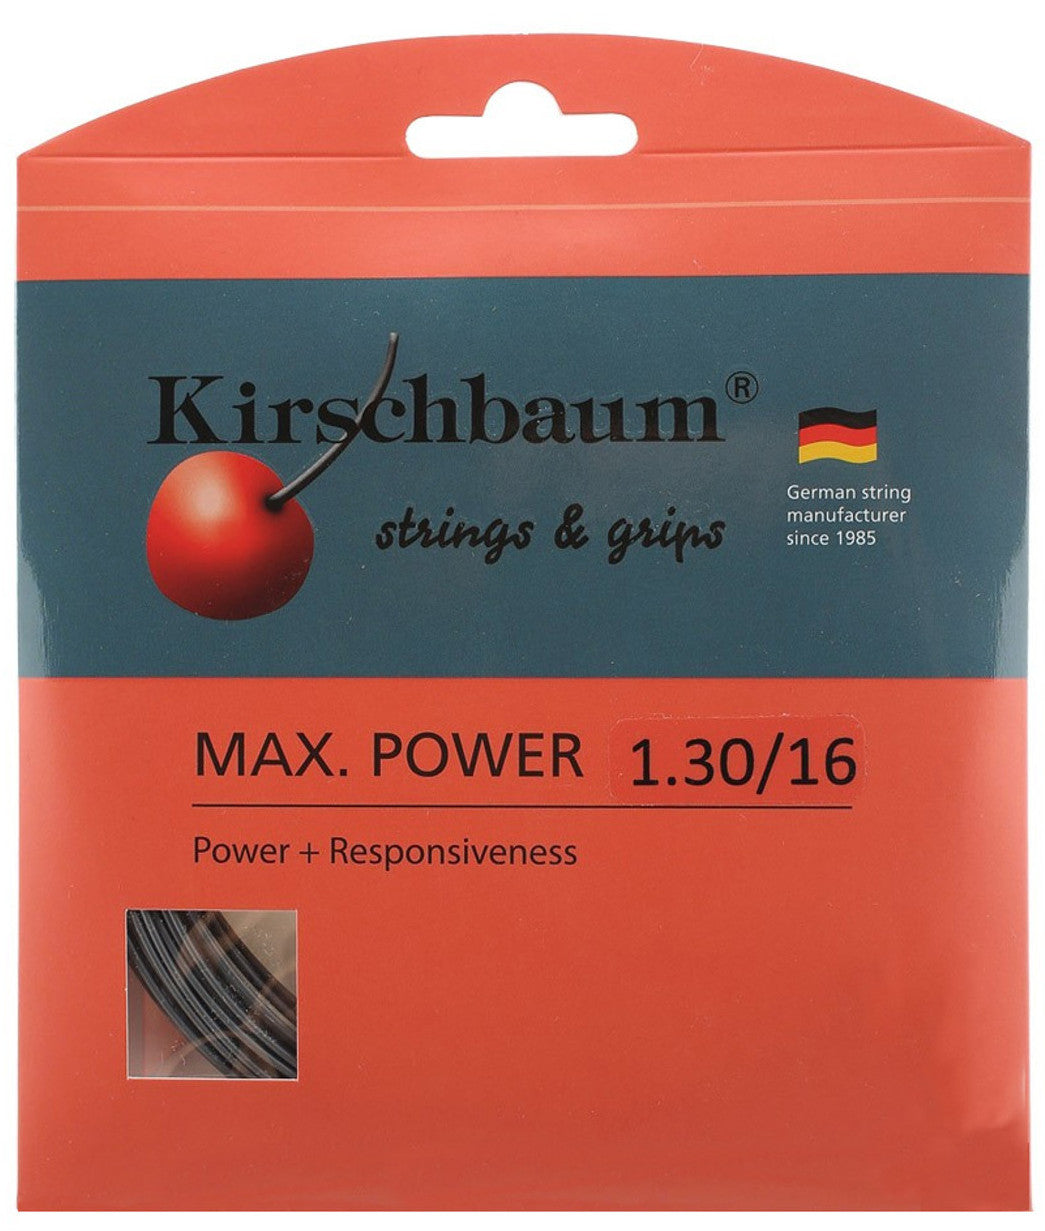 Kirschbaum Max Power 130 16g Tennis 12M String Set Tennis Strings Kirschbaum 